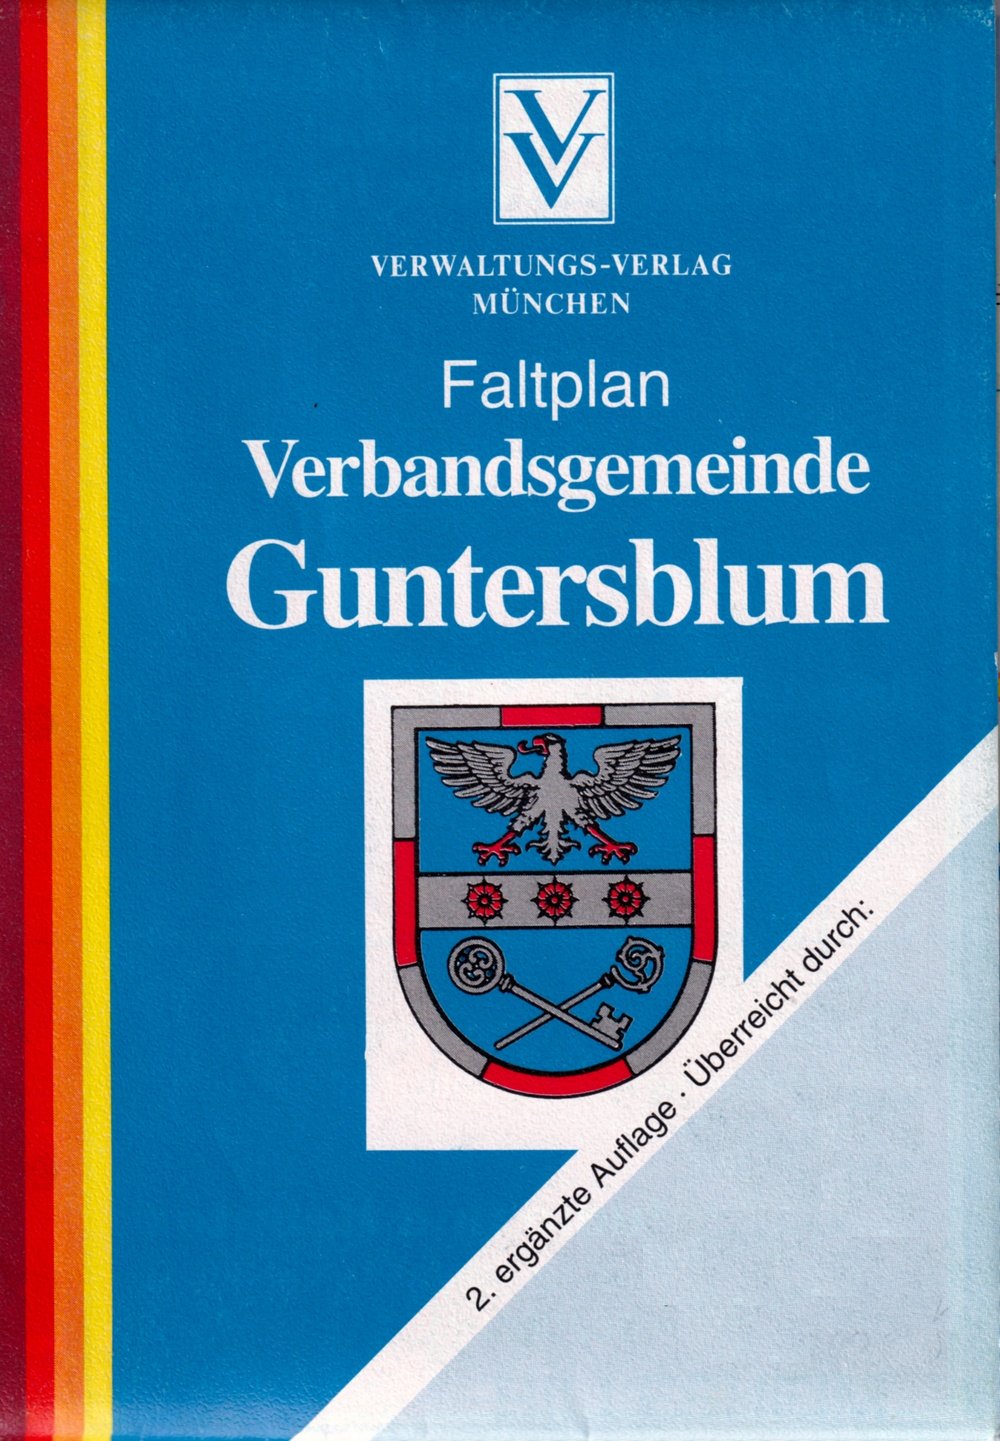 Faltkarten der Verbandsgemeinde Guntersblum (Kulturverein Guntersblum CC BY-NC-SA)